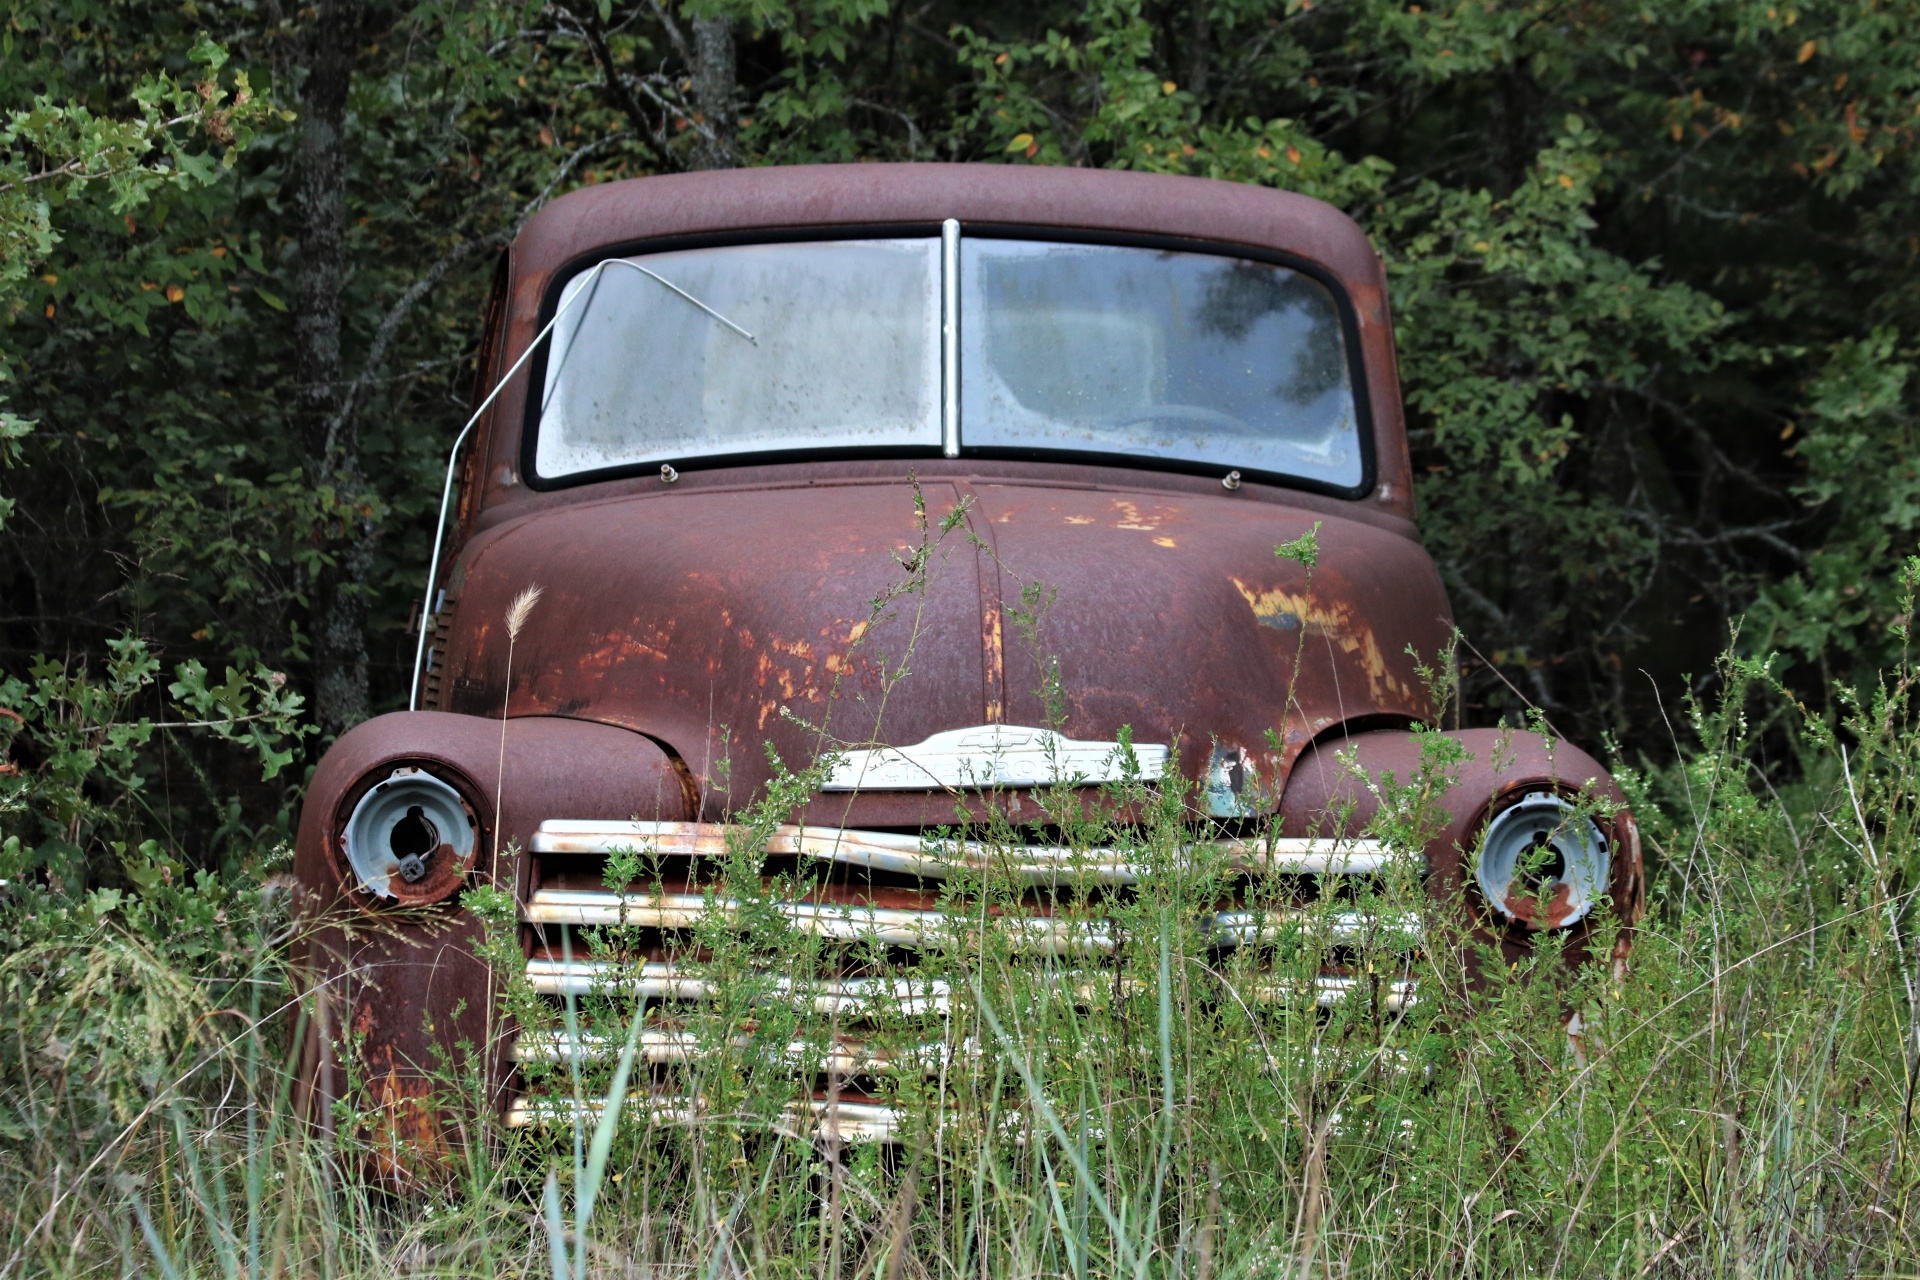 Abandoned Farm Truck In Field